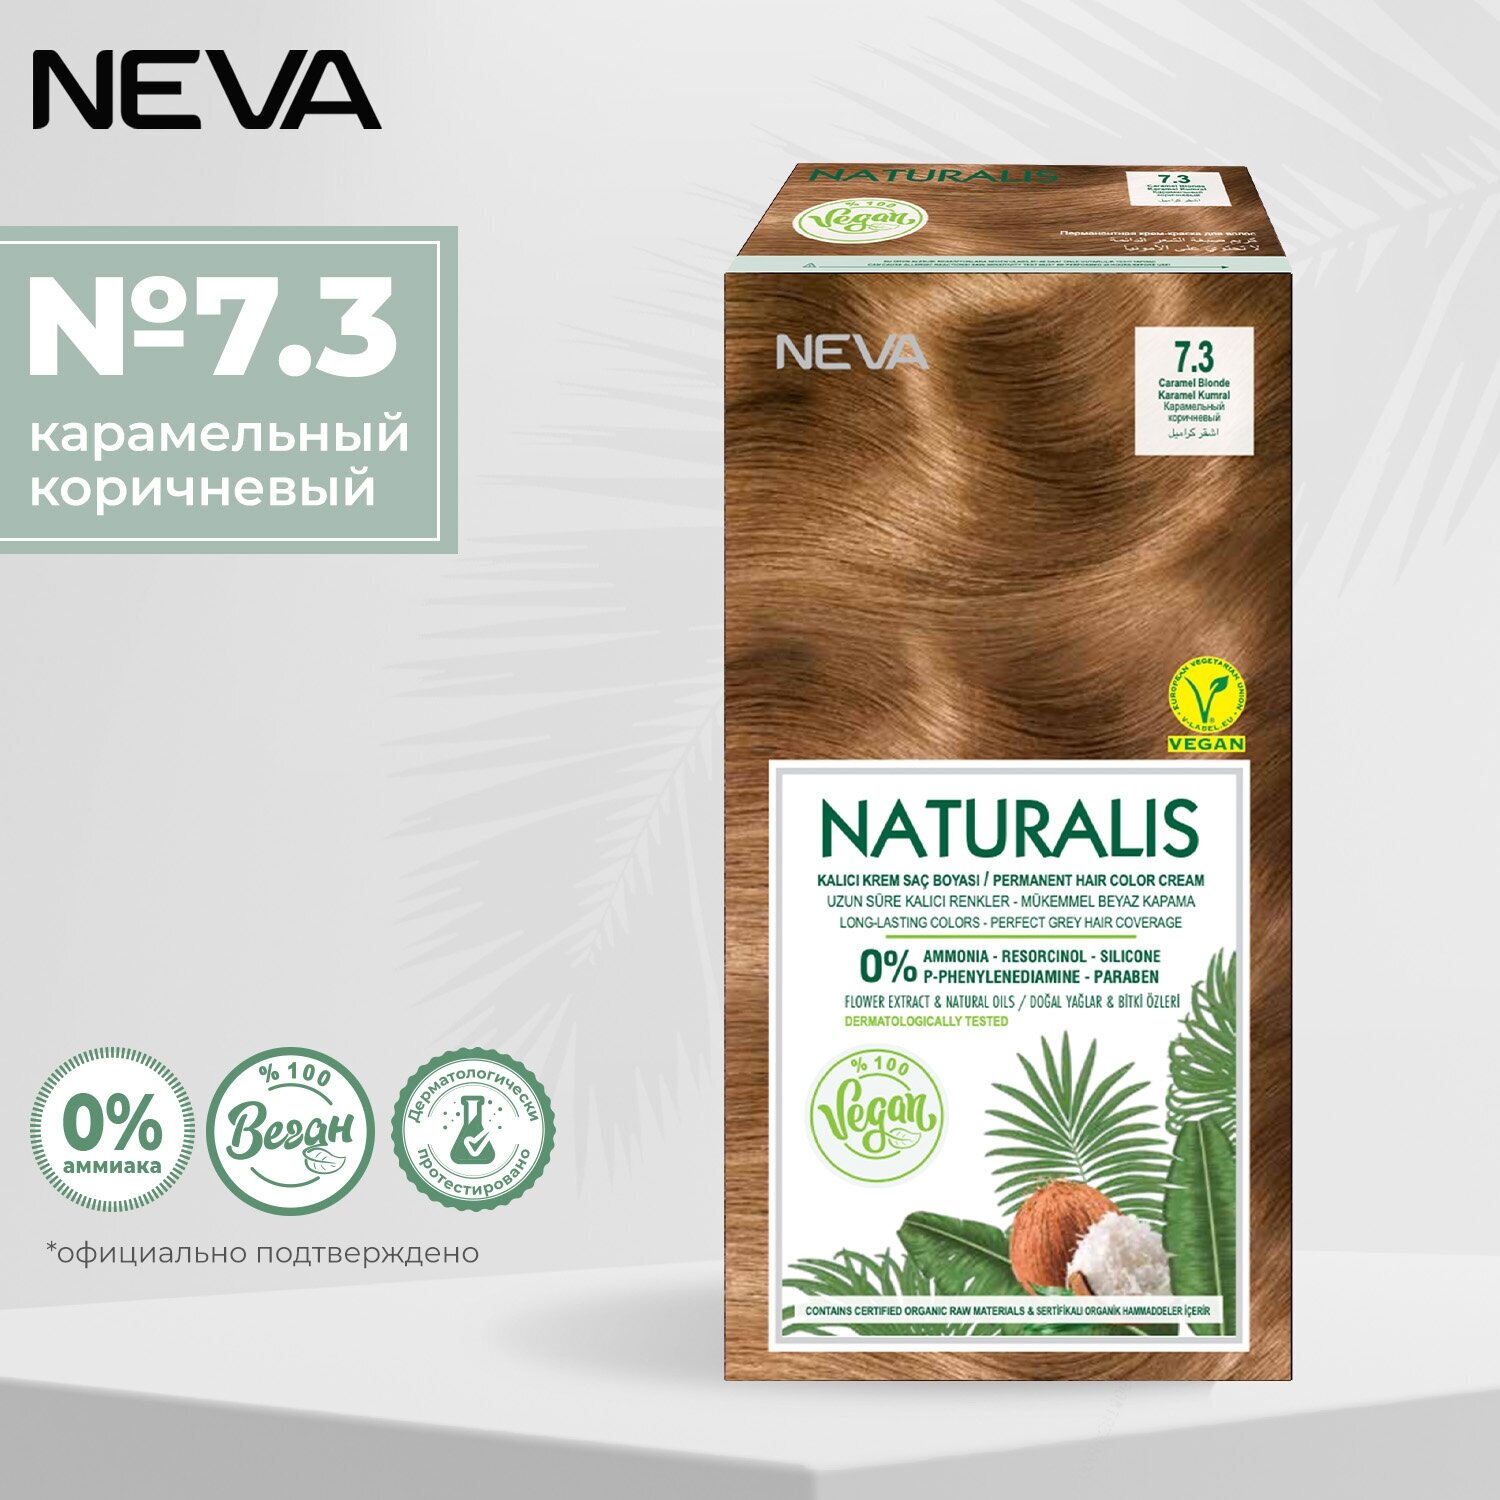 Крем-краска для волос Naturalis Vegan без аммиака № 5.0 Интенсивный светло-коричневый Okay Kozmetik san. ve dis tic. A.S - фото №1